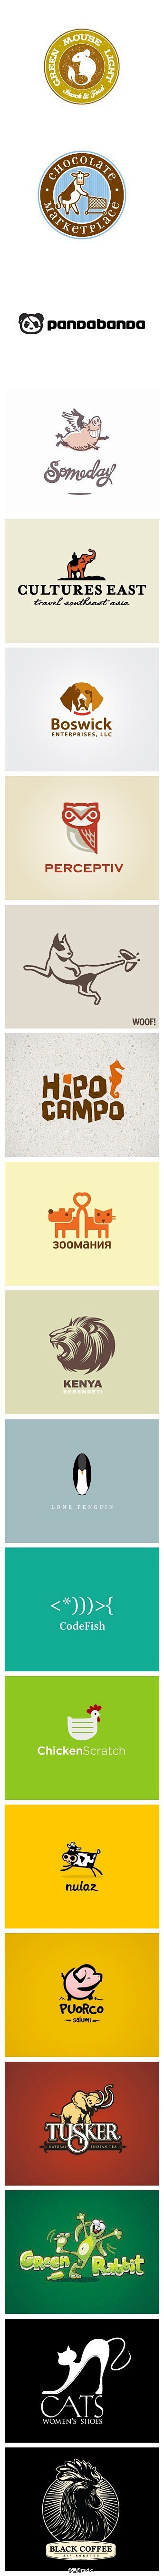 [【广告设计】20个可爱小动物的logo...